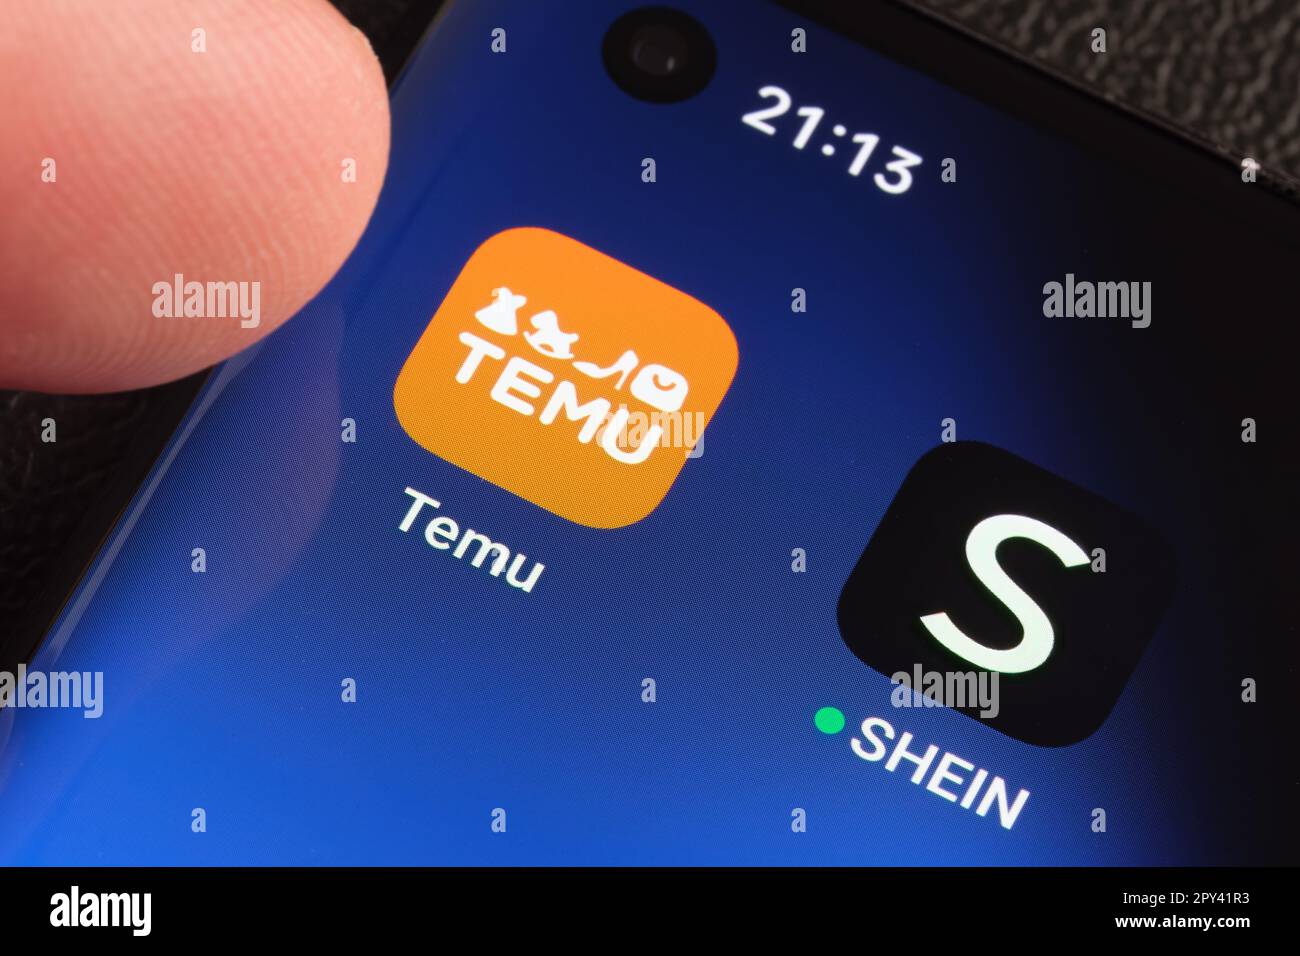 TEMU- und SHEIN-Apps werden auf dem Bildschirm des Smartphones angezeigt. Temu App und Shein App sind chinesische Einkaufsplattformen für das Budget. Stafford, United Kindom, 2. Mai 20 Stockfoto